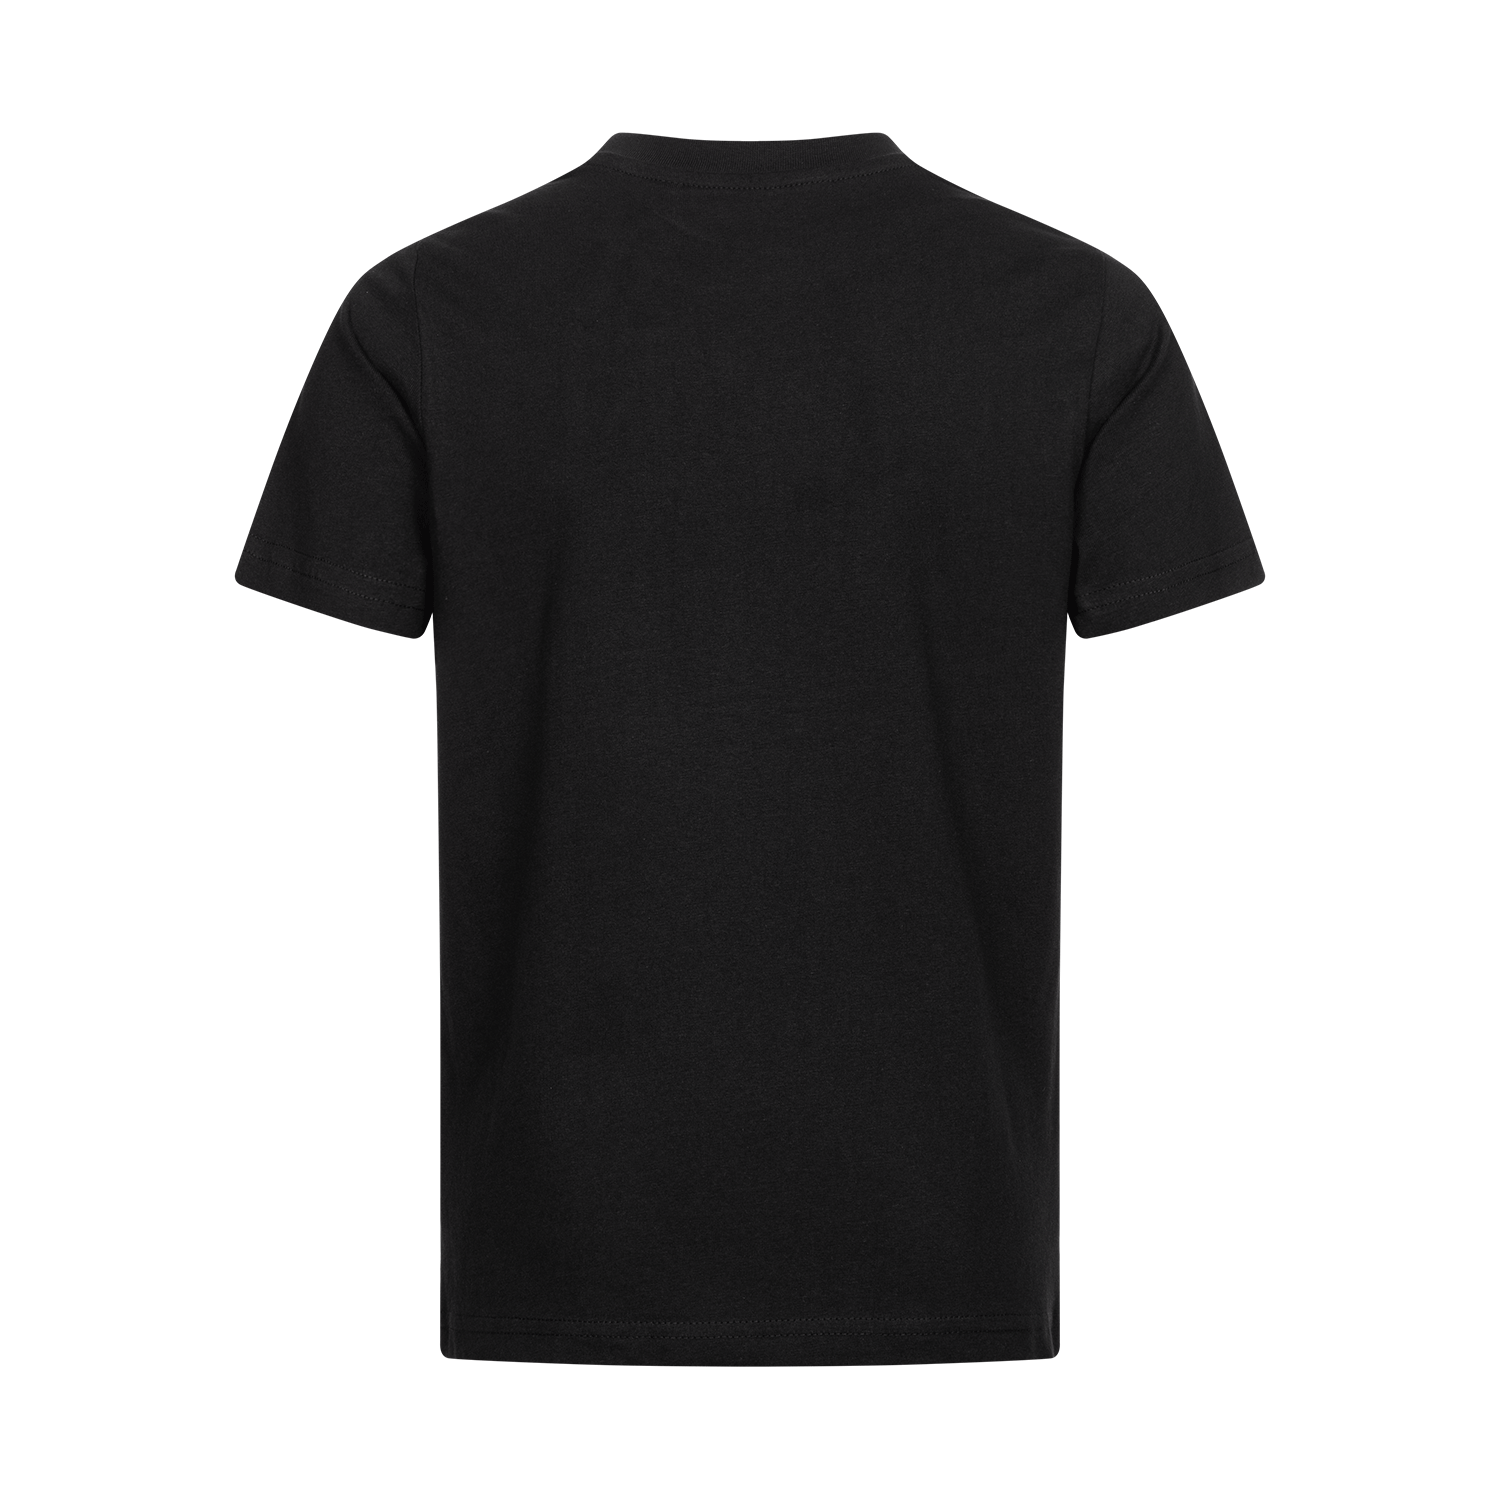 Bild 2: Kids T-Shirt Basic black